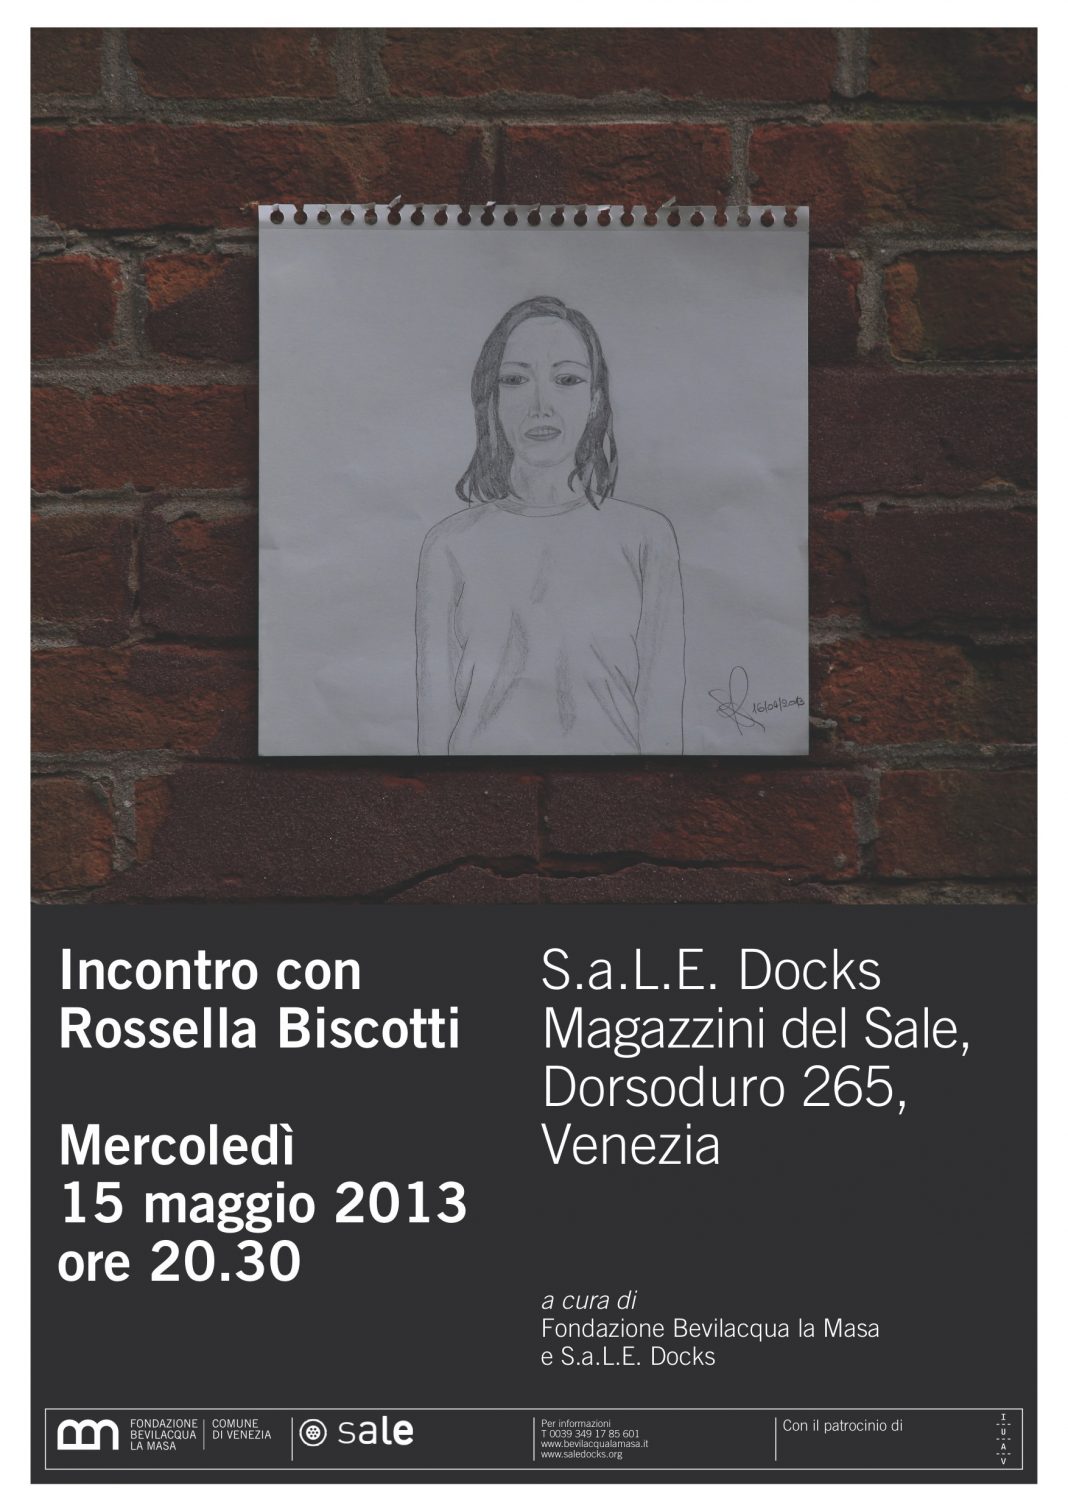 Incontro con Rossella Biscottihttps://www.exibart.com/repository/media/eventi/2013/05/incontro-con-rossella-biscotti-1068x1511.jpg